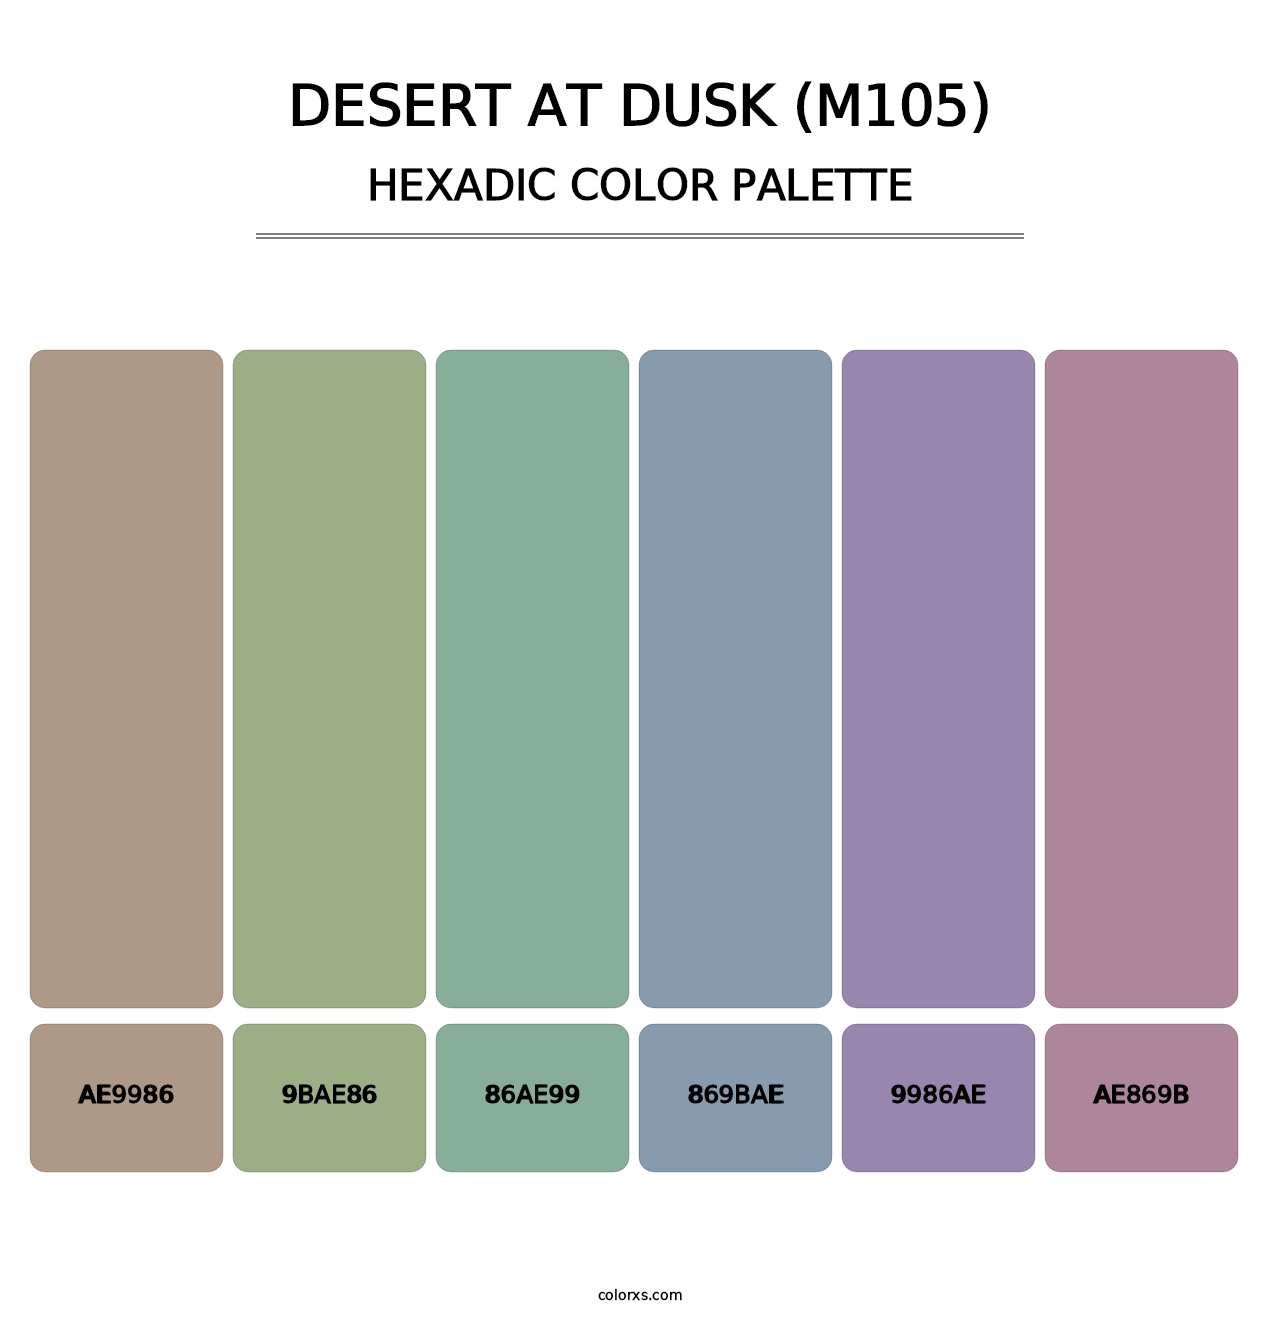 Desert at Dusk (M105) - Hexadic Color Palette